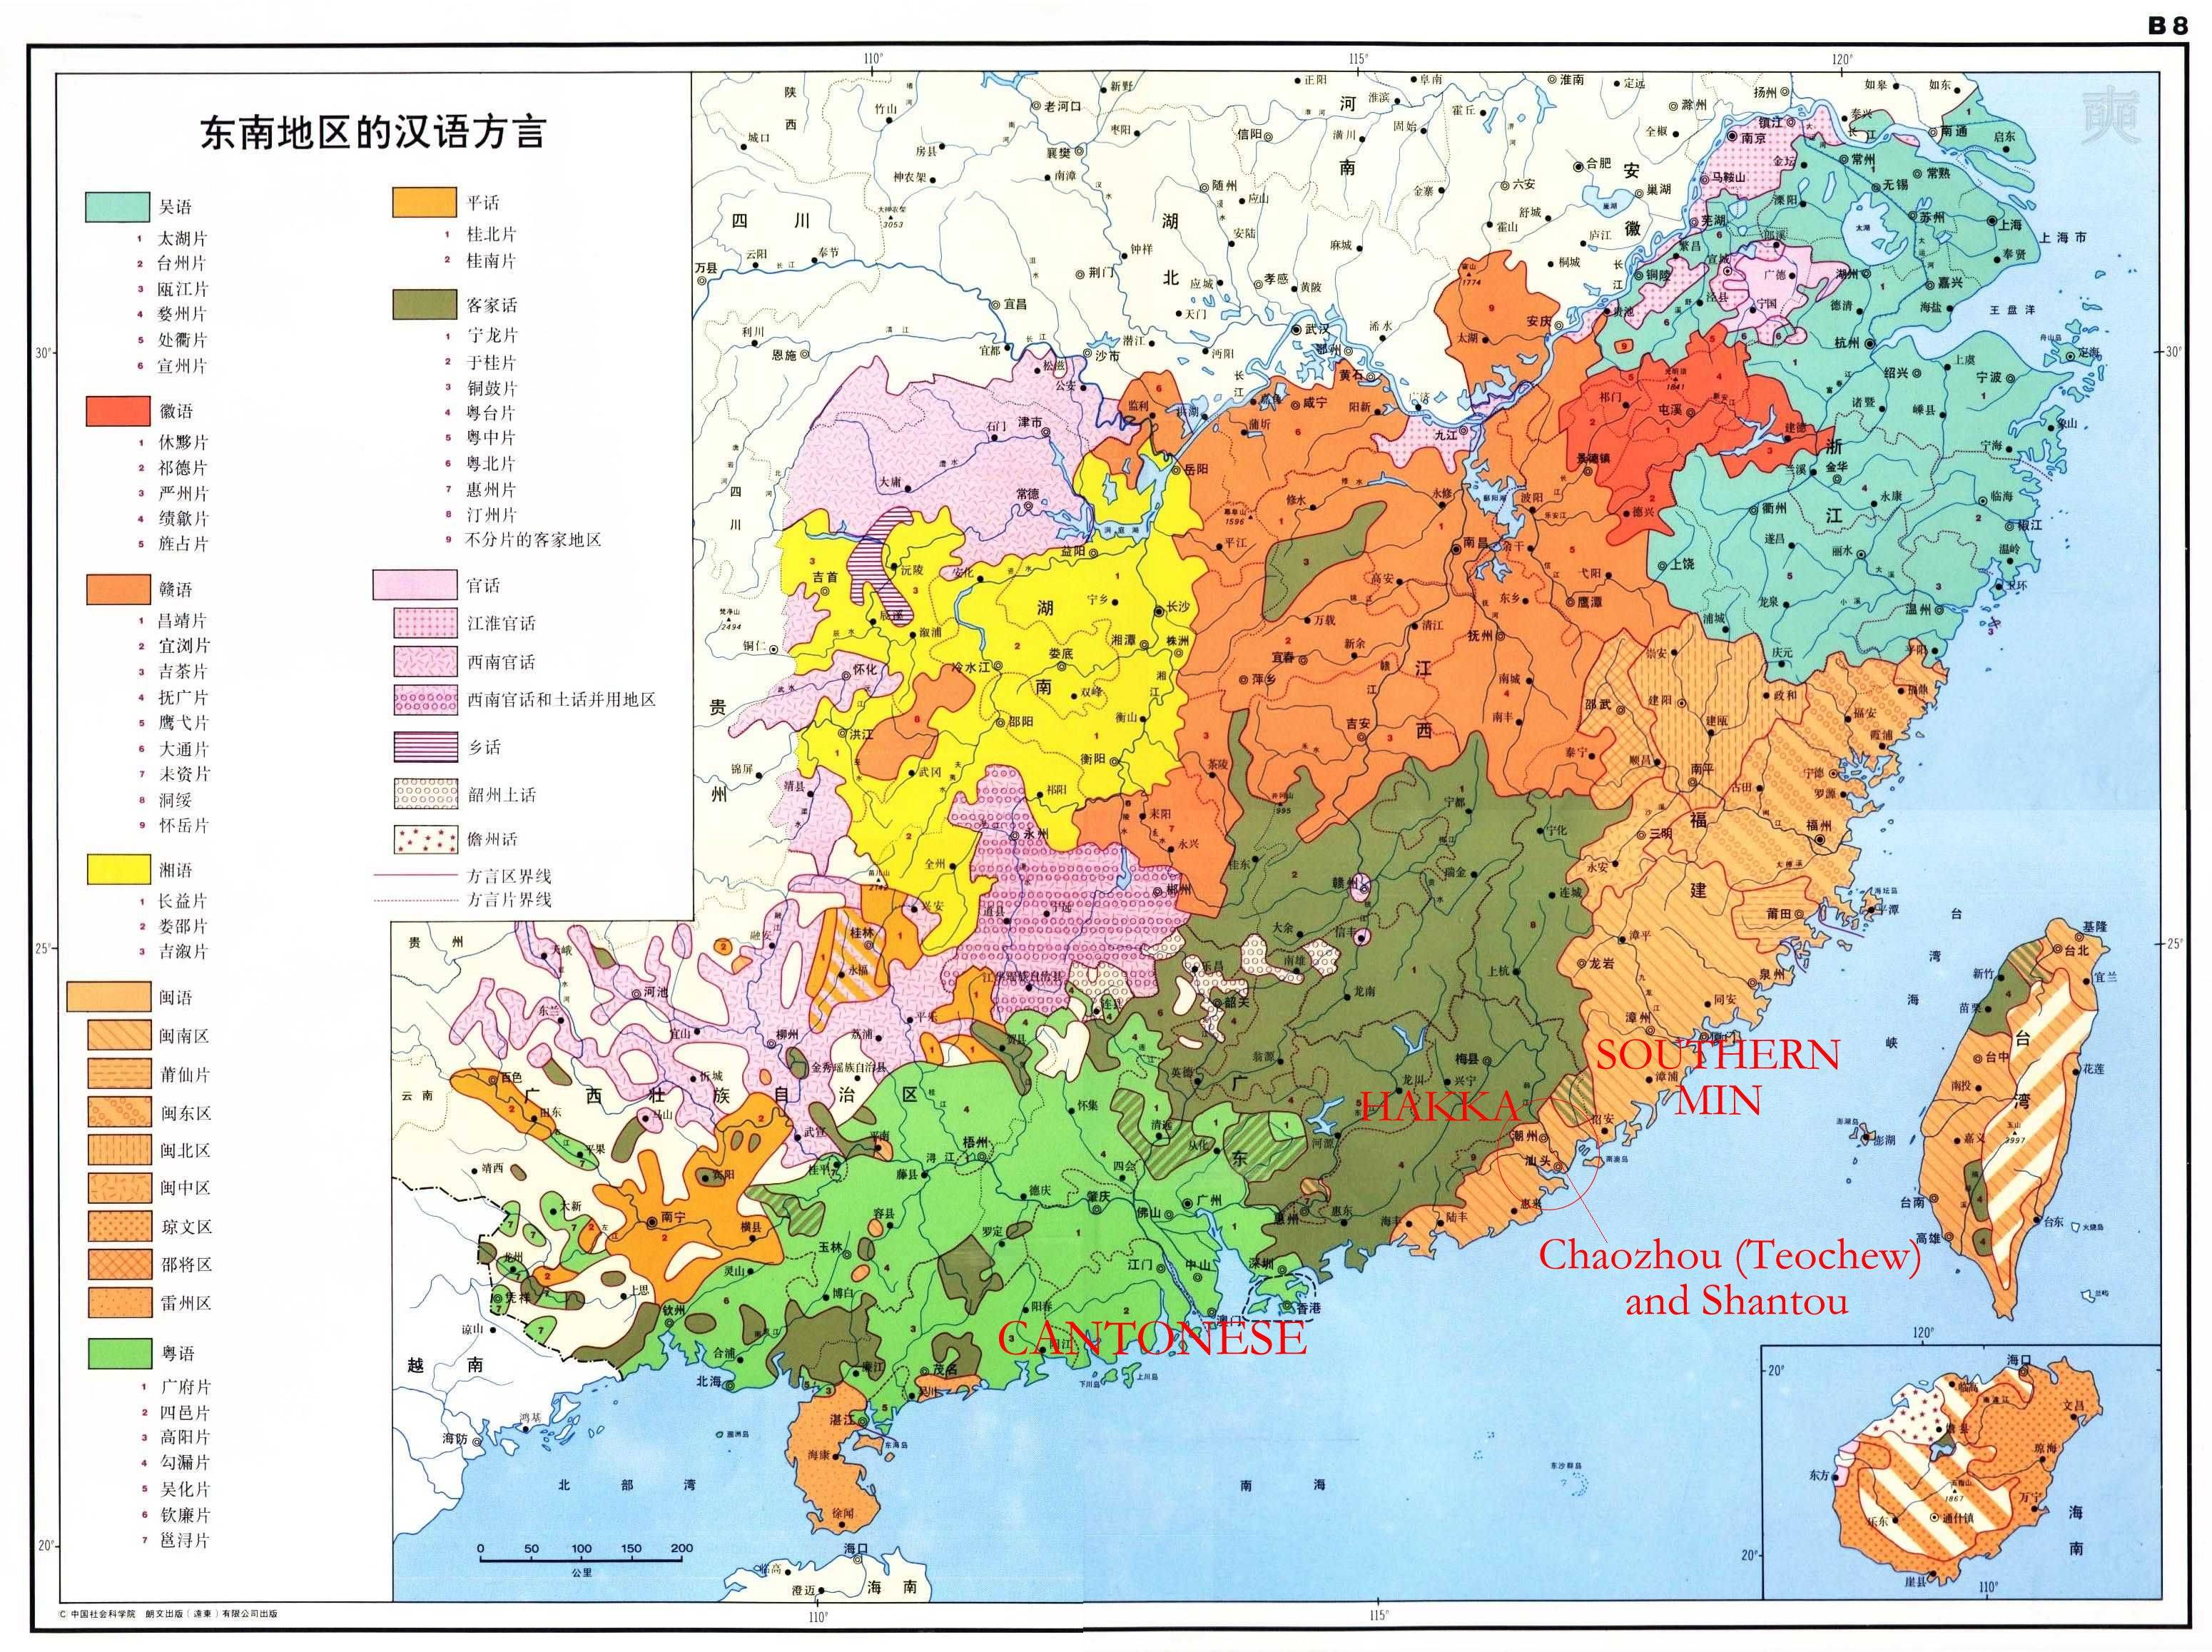 Диалекты китайского языка: особенности китайской лингвистики, описание, виды - новости, статьи и обзоры